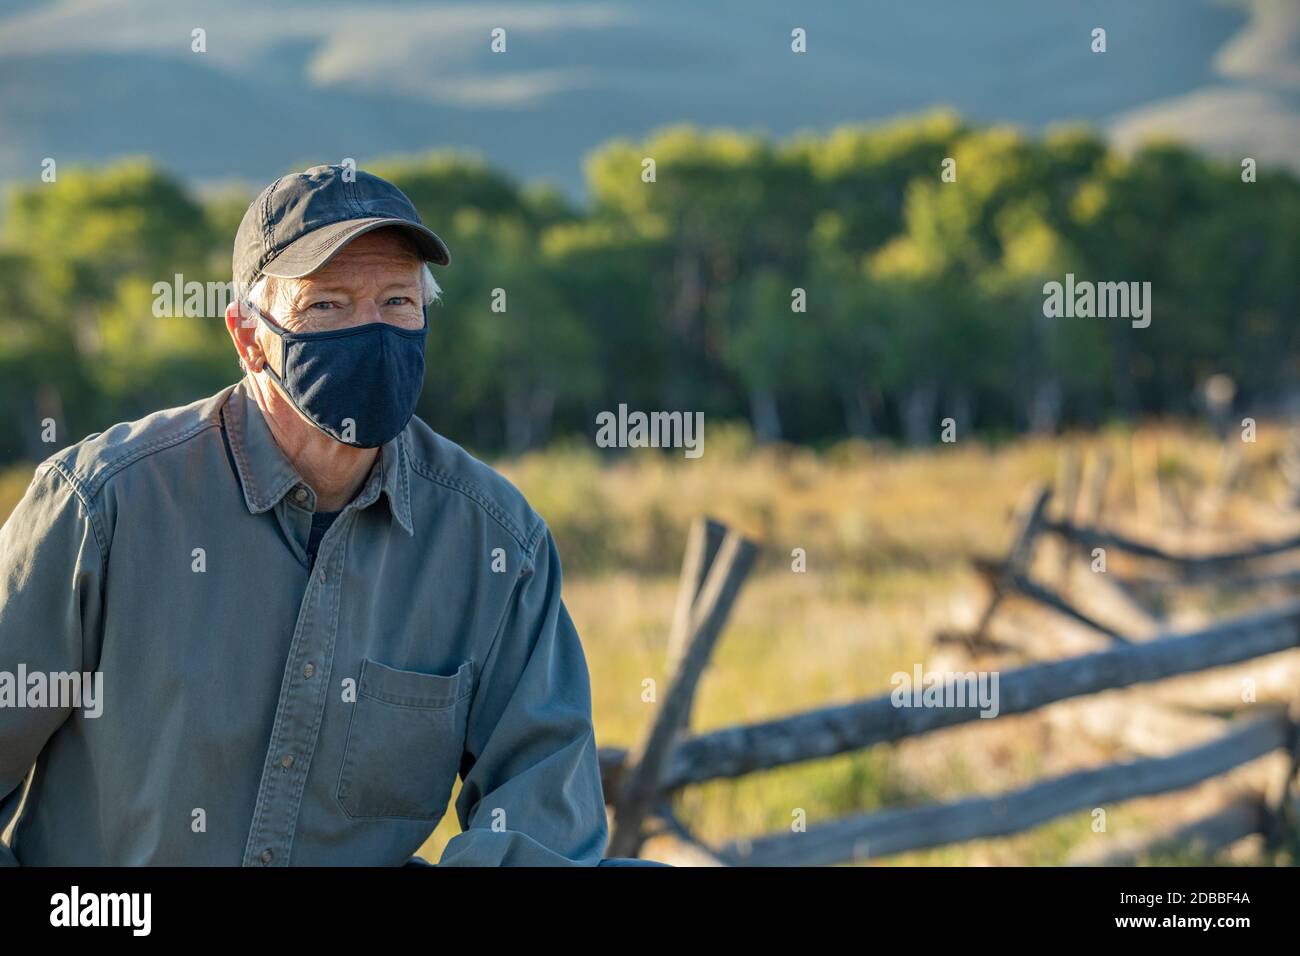 Etats-Unis, Idaho, Bellevue, Portrait de fermier dans le masque facial Banque D'Images